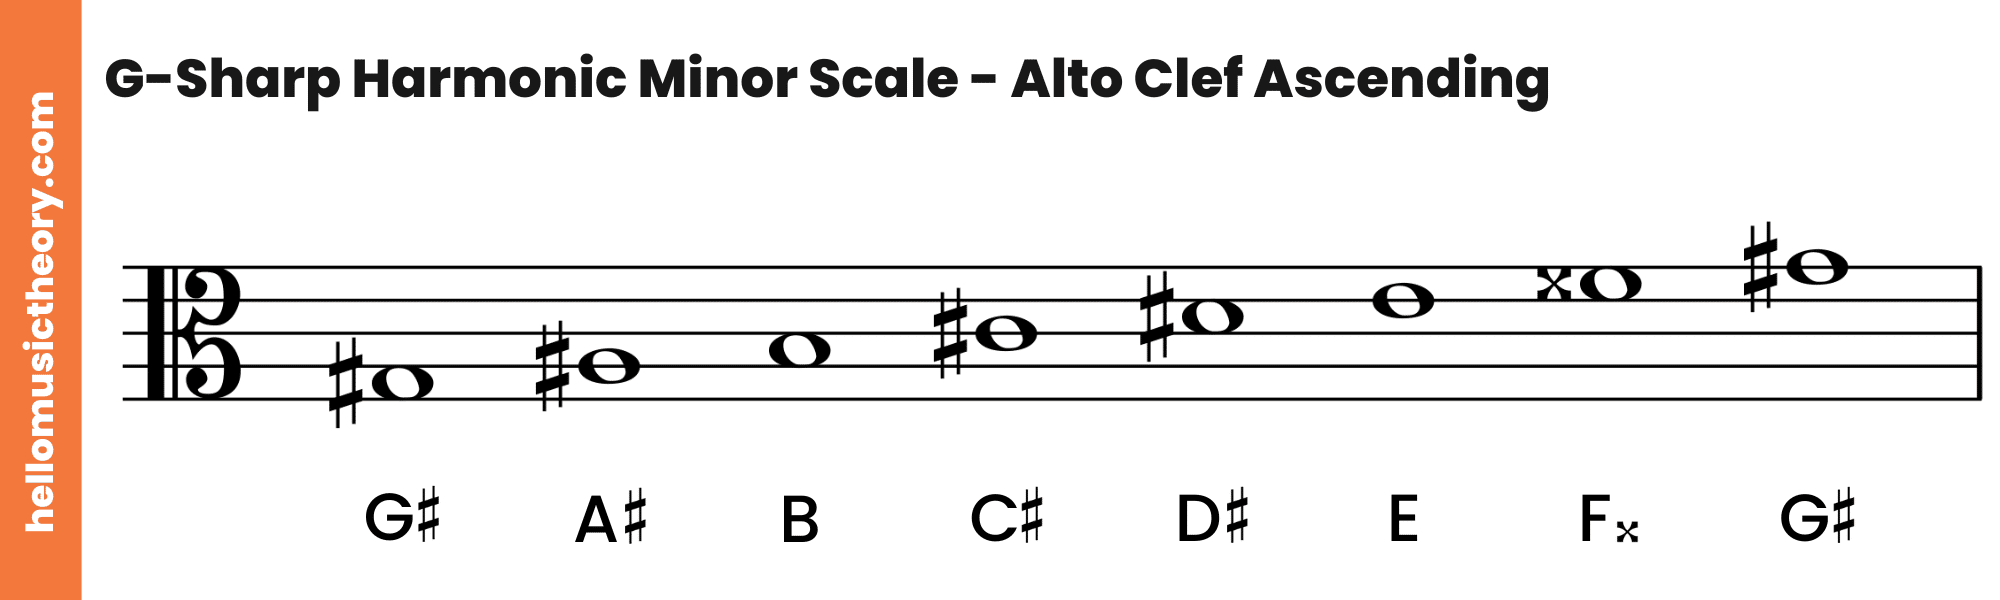 G-Sharp Harmonic Minor Scale Alto Clef Ascending